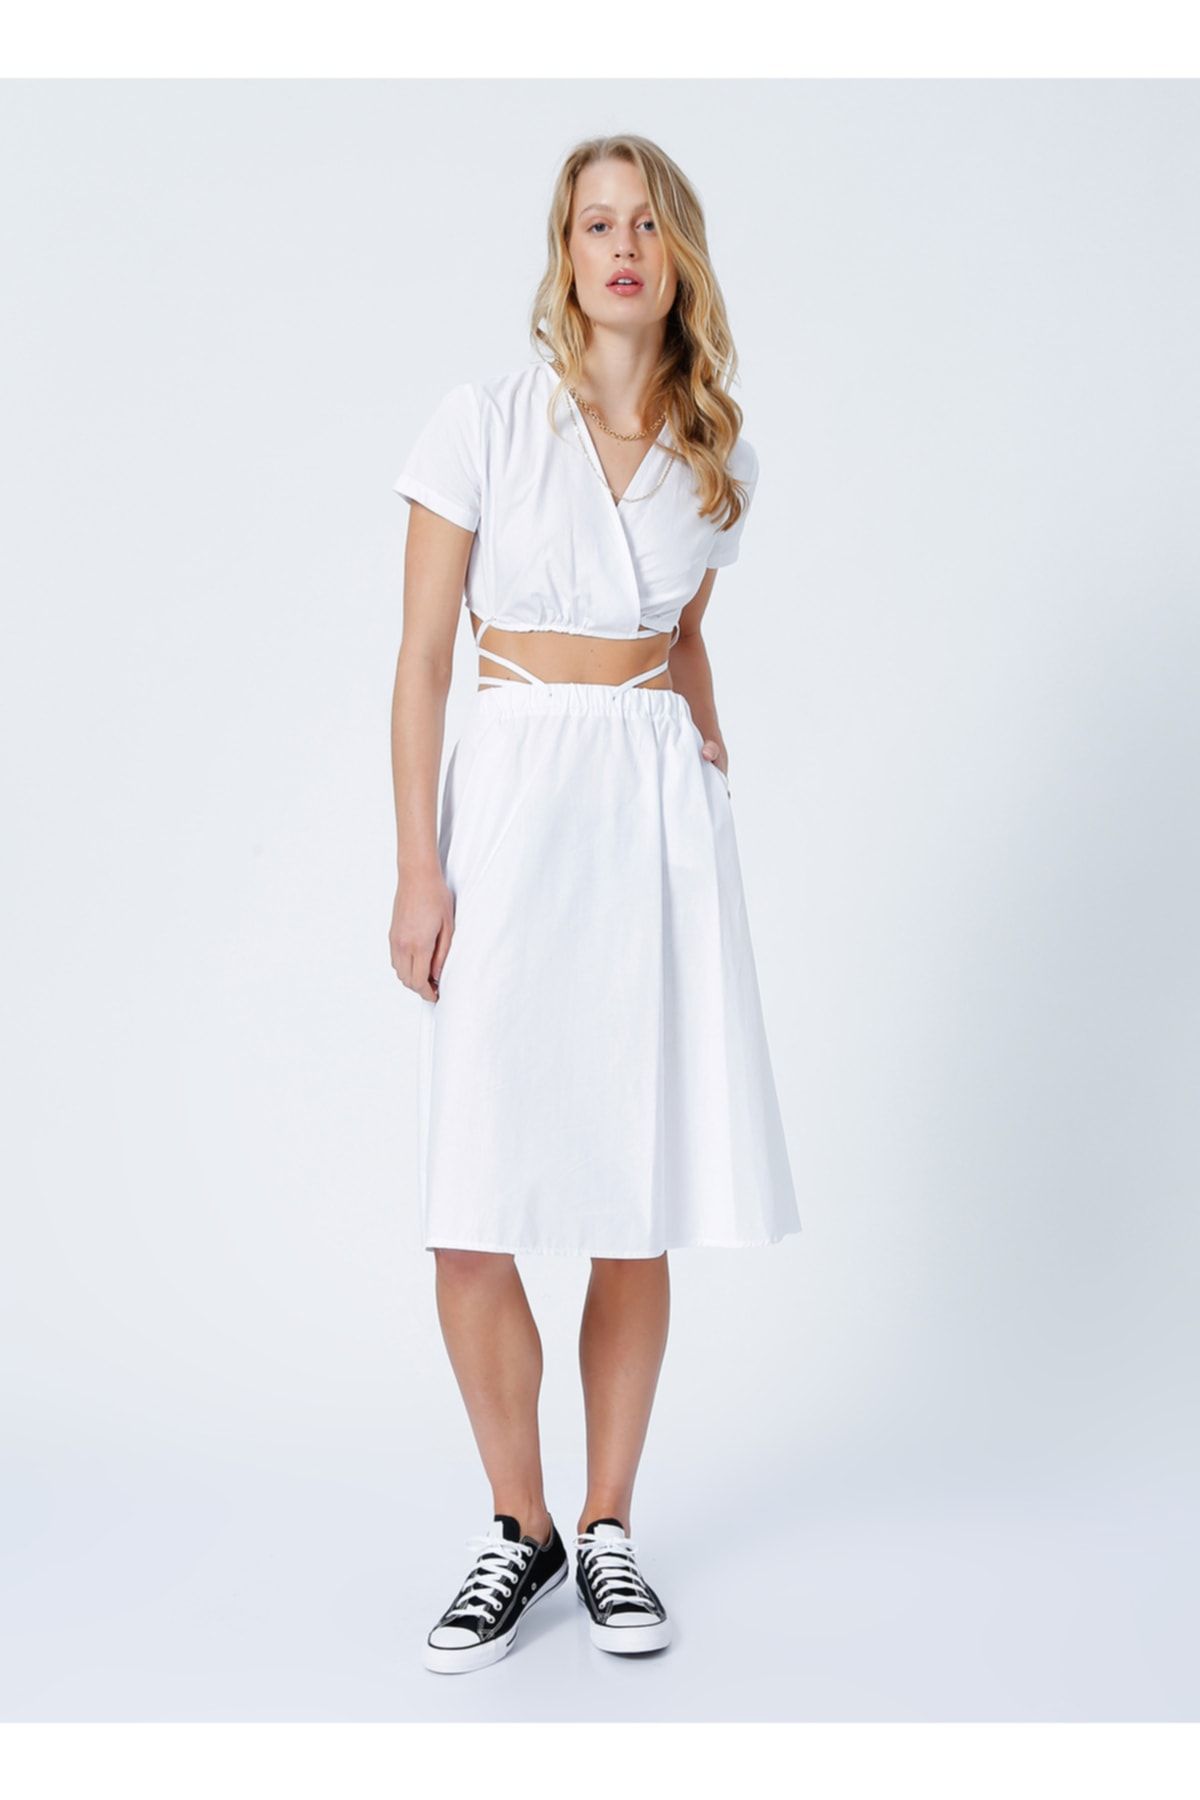 LİMON COMPANY Limon Golf Kruvaze Yaka Bağlamalı Standart Kalıp Düz Beyaz Kadın Uzun Elbise